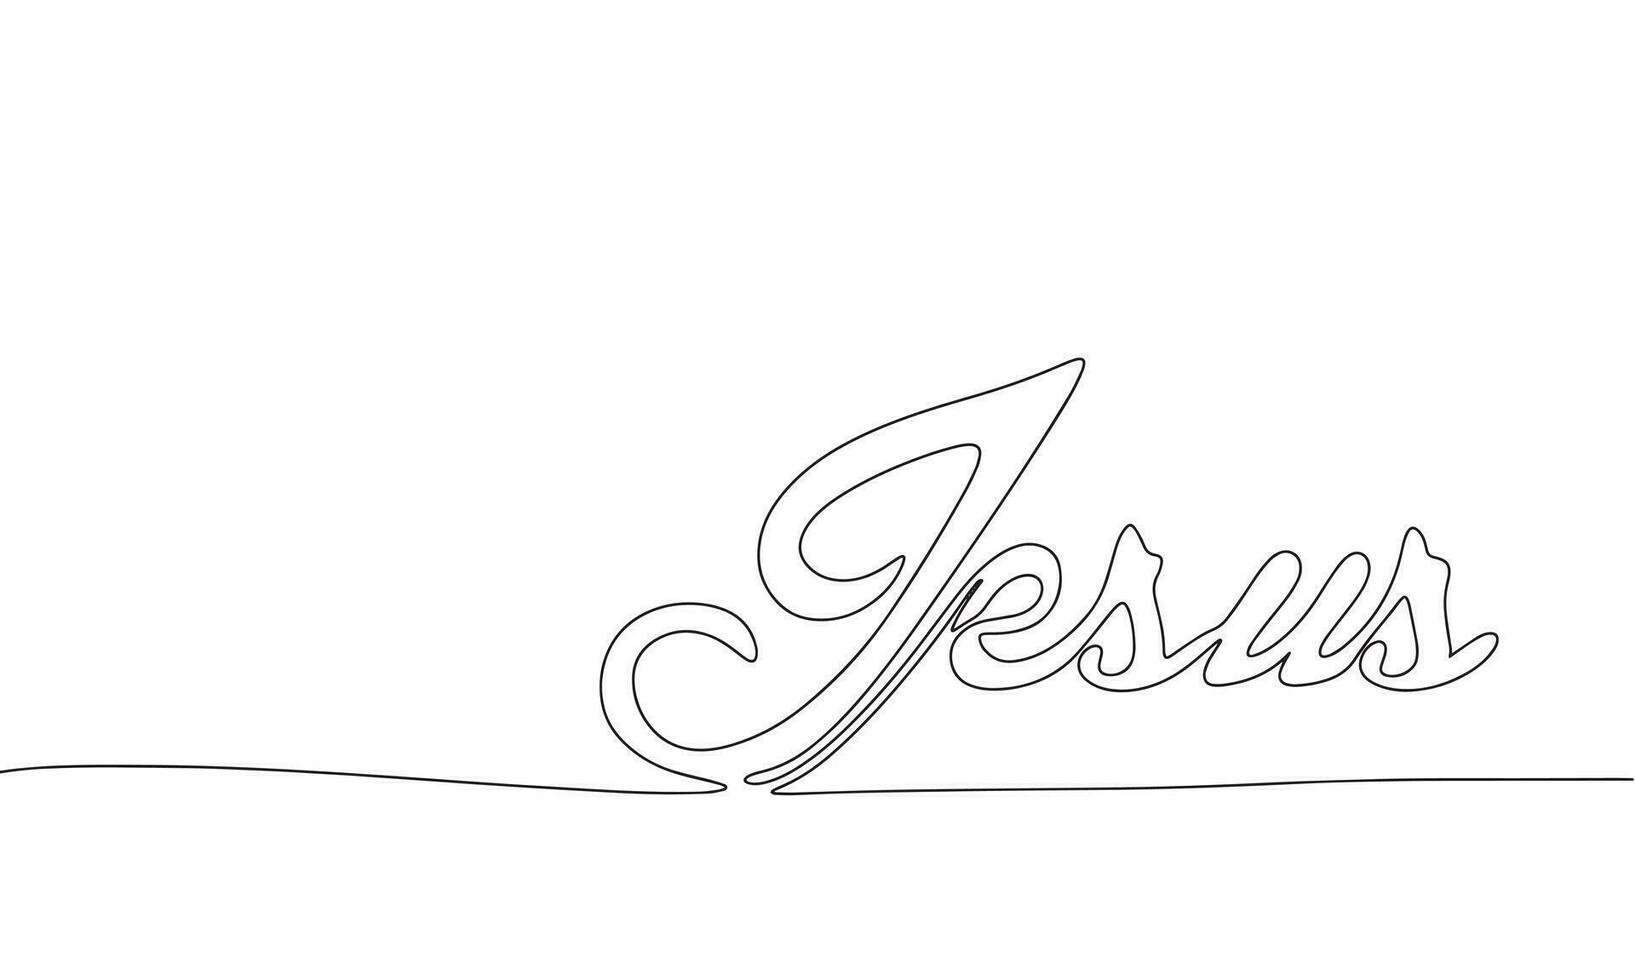 uno linea continuo Gesù parola. religione concetto bandiera nel linea arte mano disegno stile. schema vettore illustrazione.